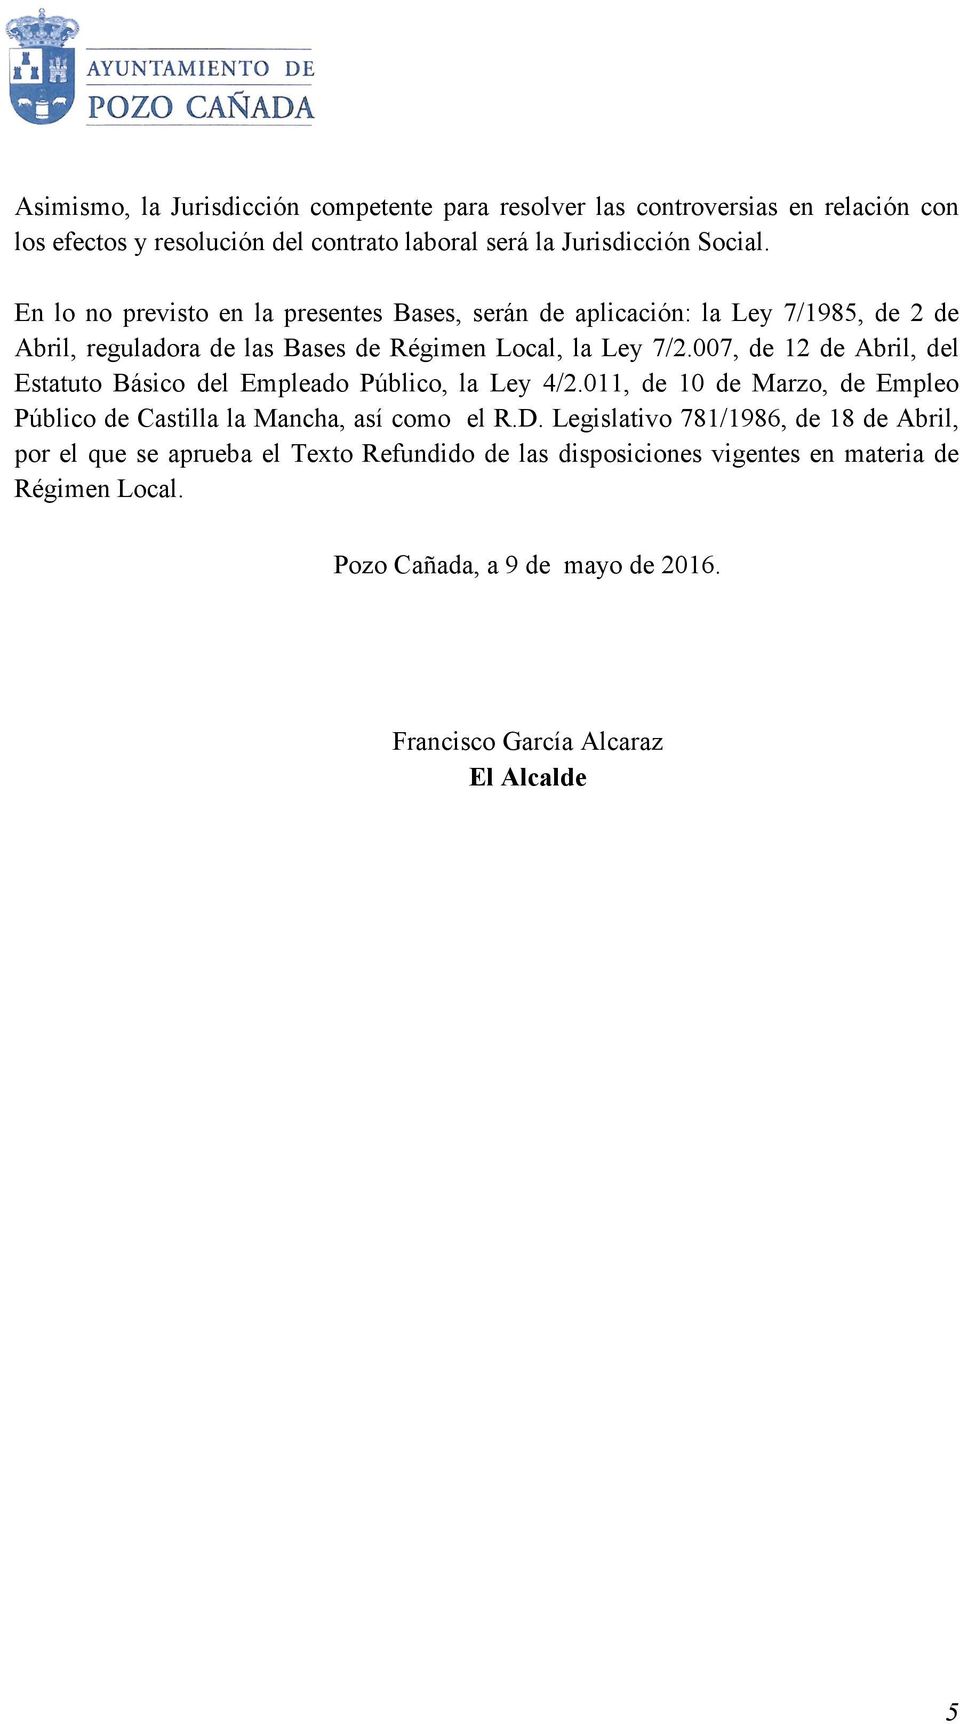 007, de 12 de Abril, del Estatuto Básico del Empleado Público, la Ley 4/2.011, de 10 de Marzo, de Empleo Público de Castilla la Mancha, así como el R.D.